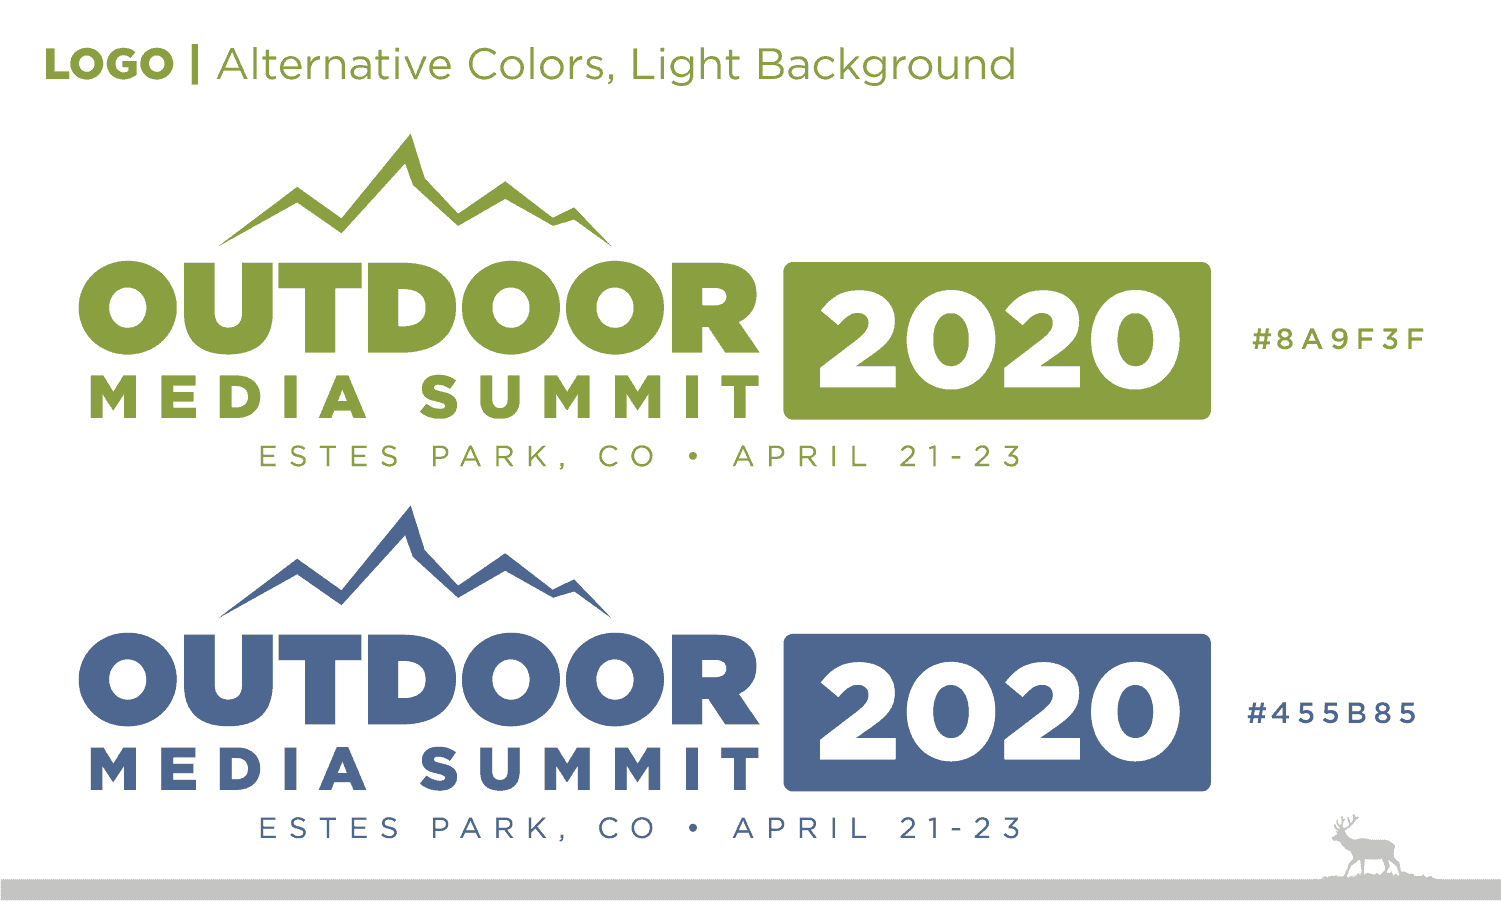 Outdoor Media Summit Alternate Logos 1